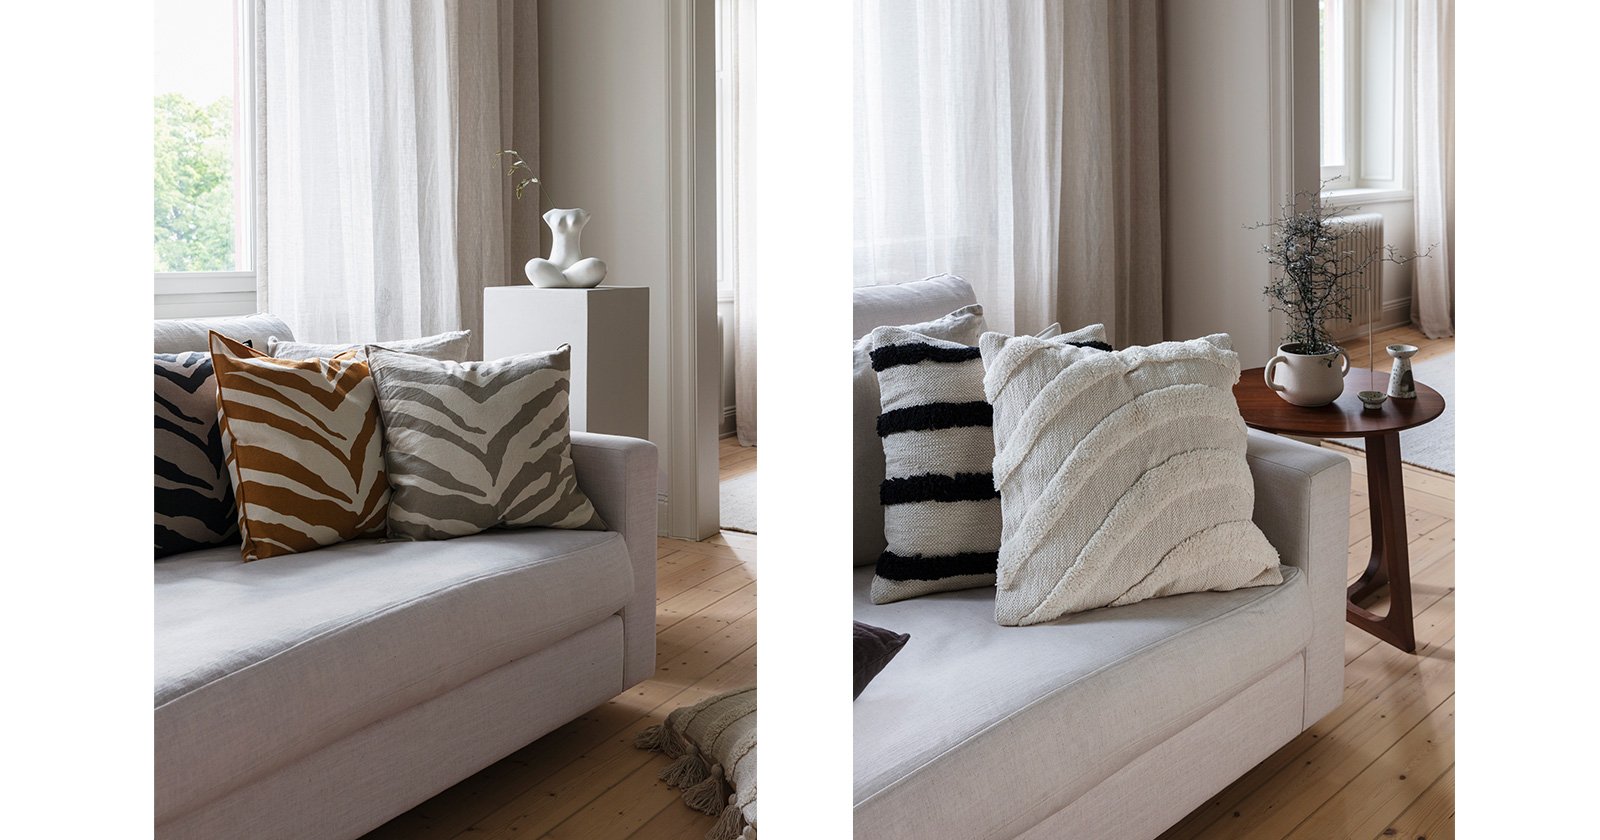 Kolme seeprakuvioista tyynyä valkoisella sohvalla